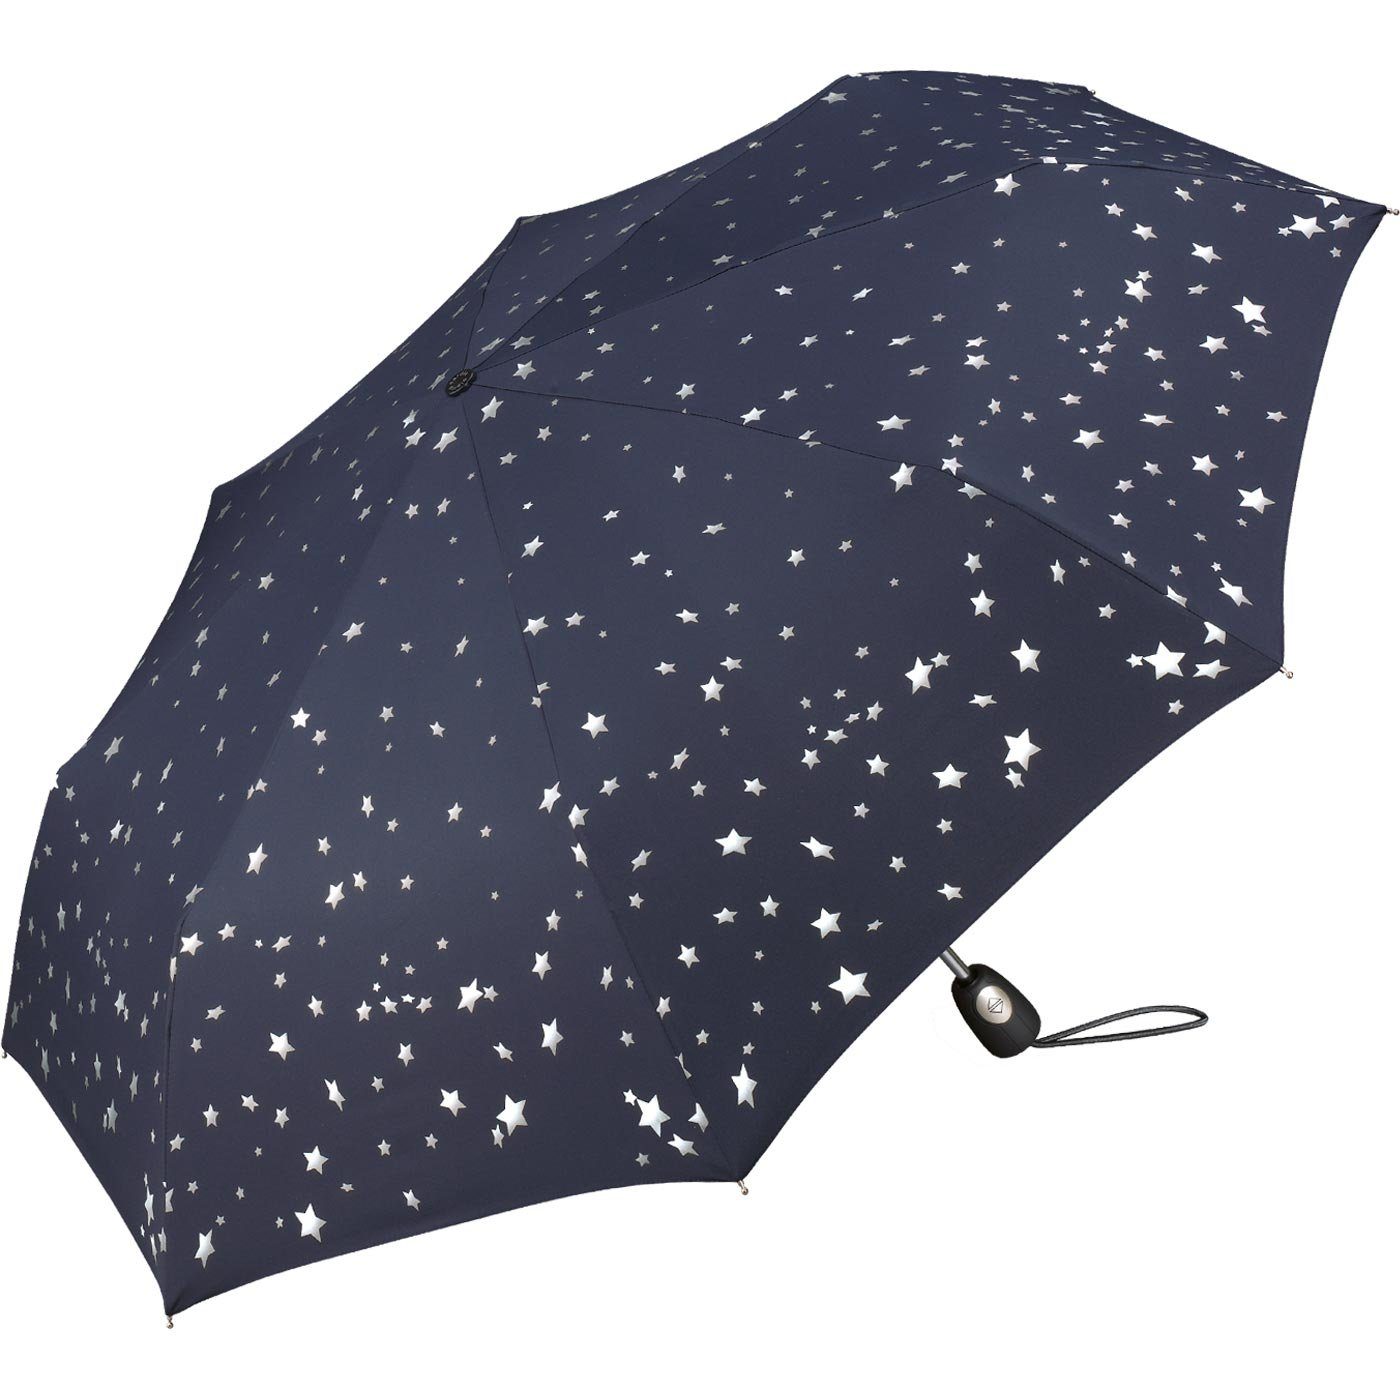 Pierre Cardin Taschenregenschirm Design Damen-Regenschirm in blau-silber mit Sterne traumhafte Auf-Zu-Automatik, verspieltem schöner